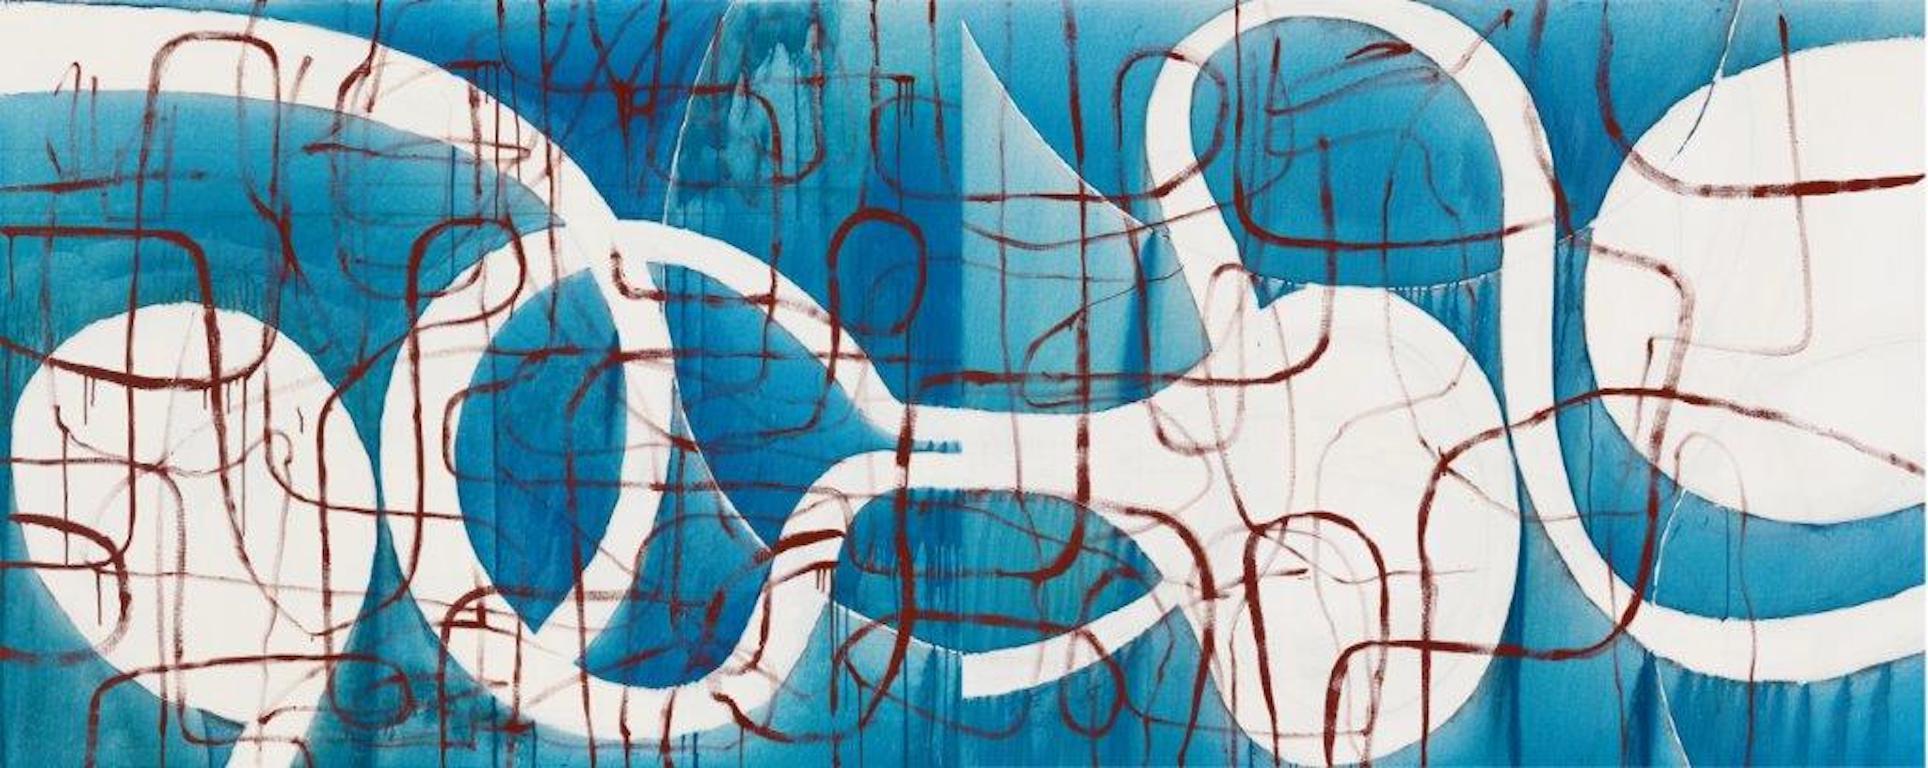 DELTA - abstraktes Spiegelbild (Diptychon) Öl auf Leinwand 4x10 Fuß – Painting von Javier Arizmendi-Kalb